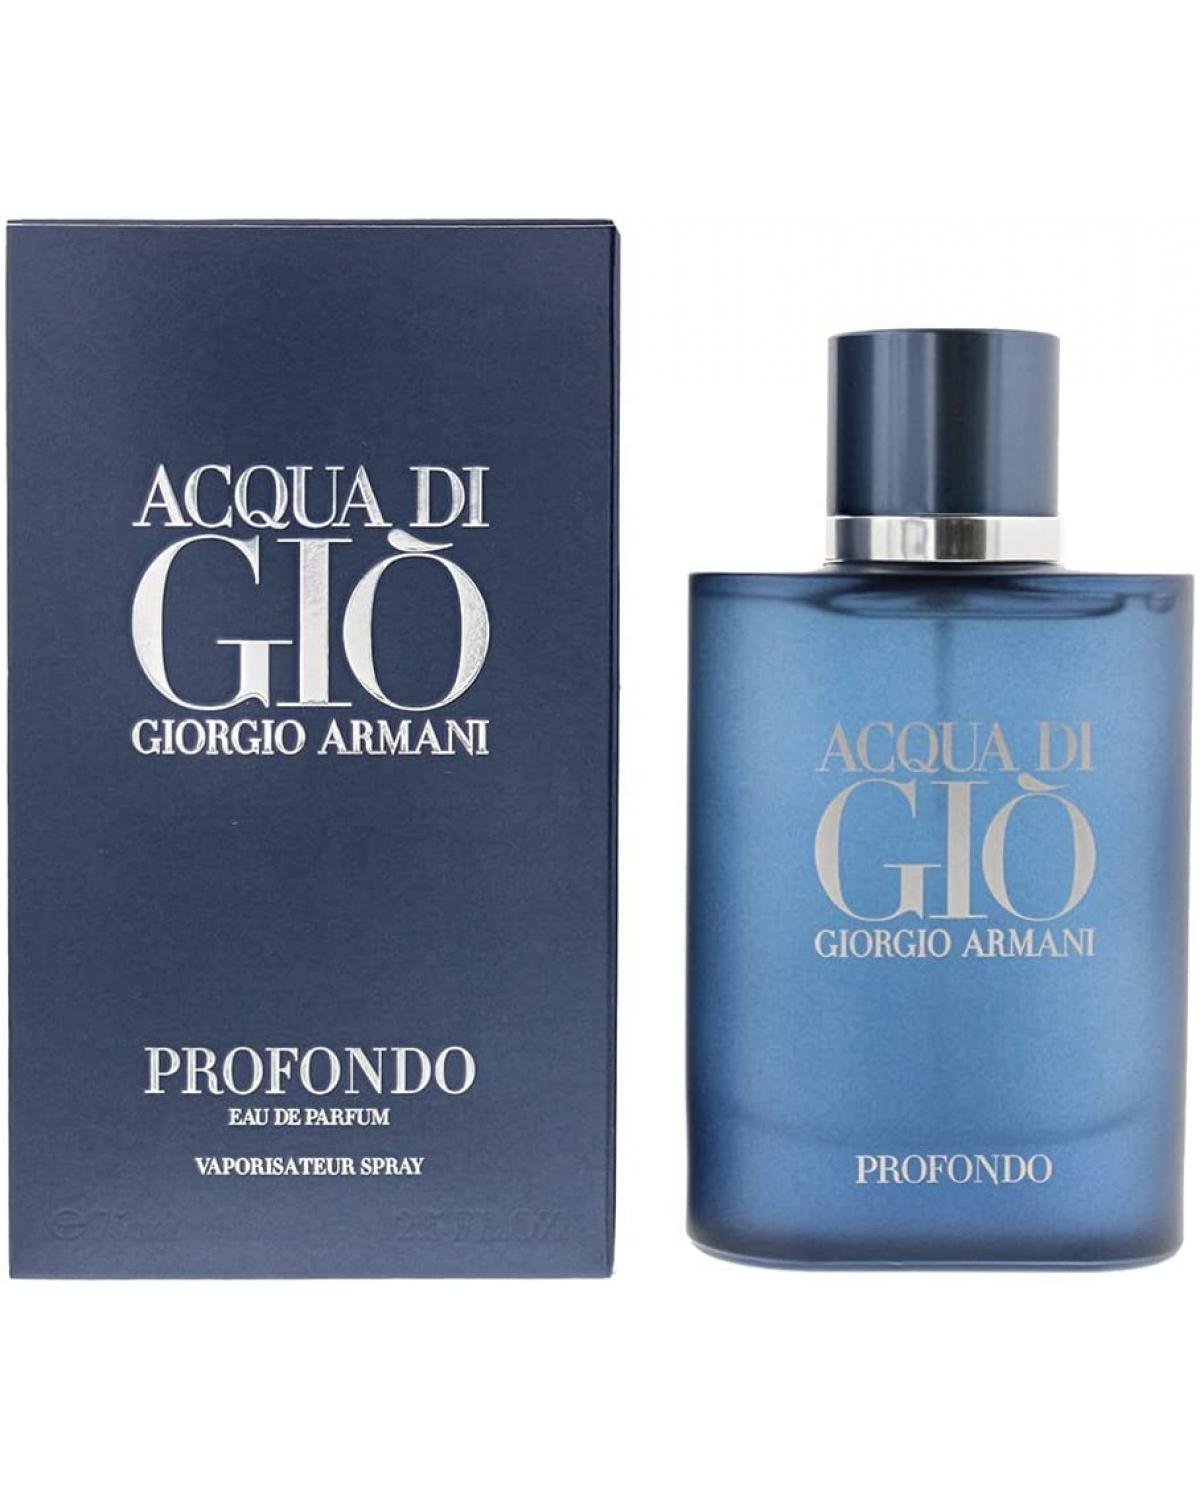 Acqua Di Giò Profondo Giorgio Armani - Perfume Masculino EDP - 75ml